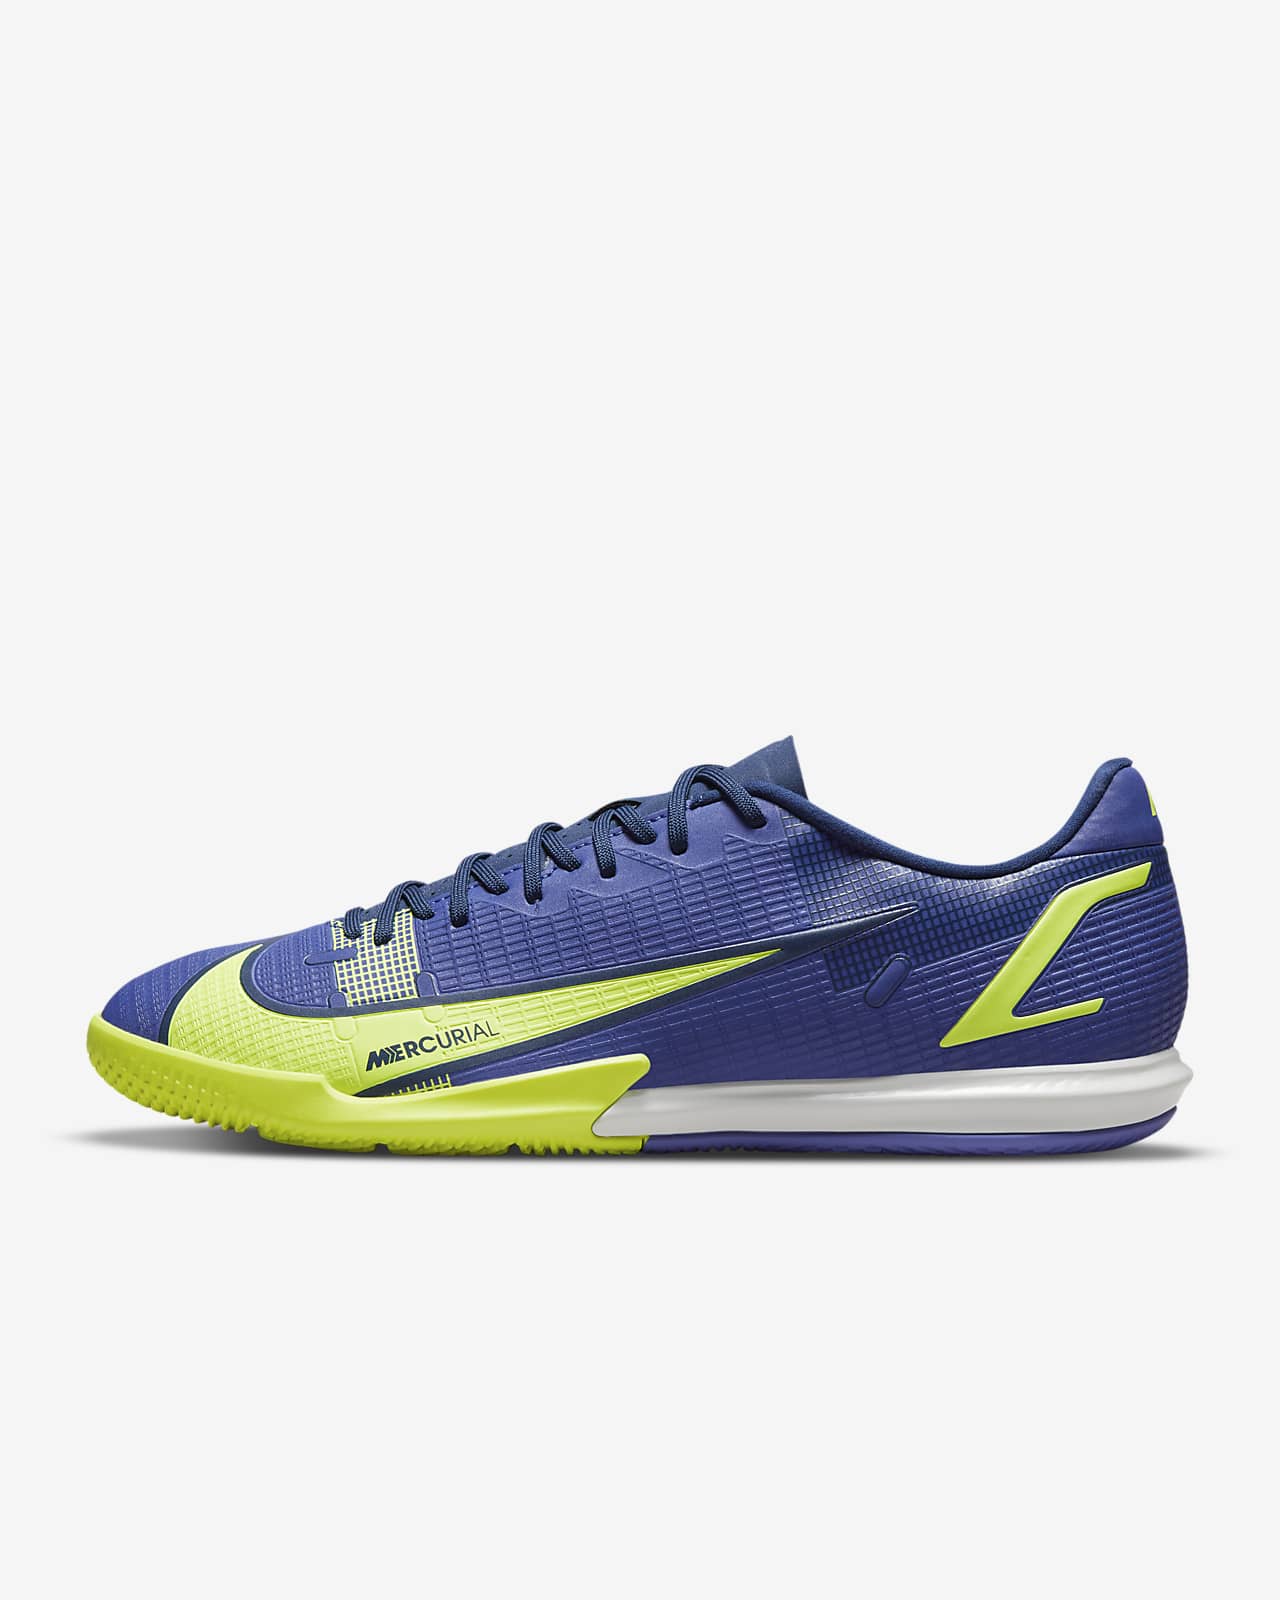 Nike Mercurial Vapor 14 Academy IC Indoor Court Football Shoe